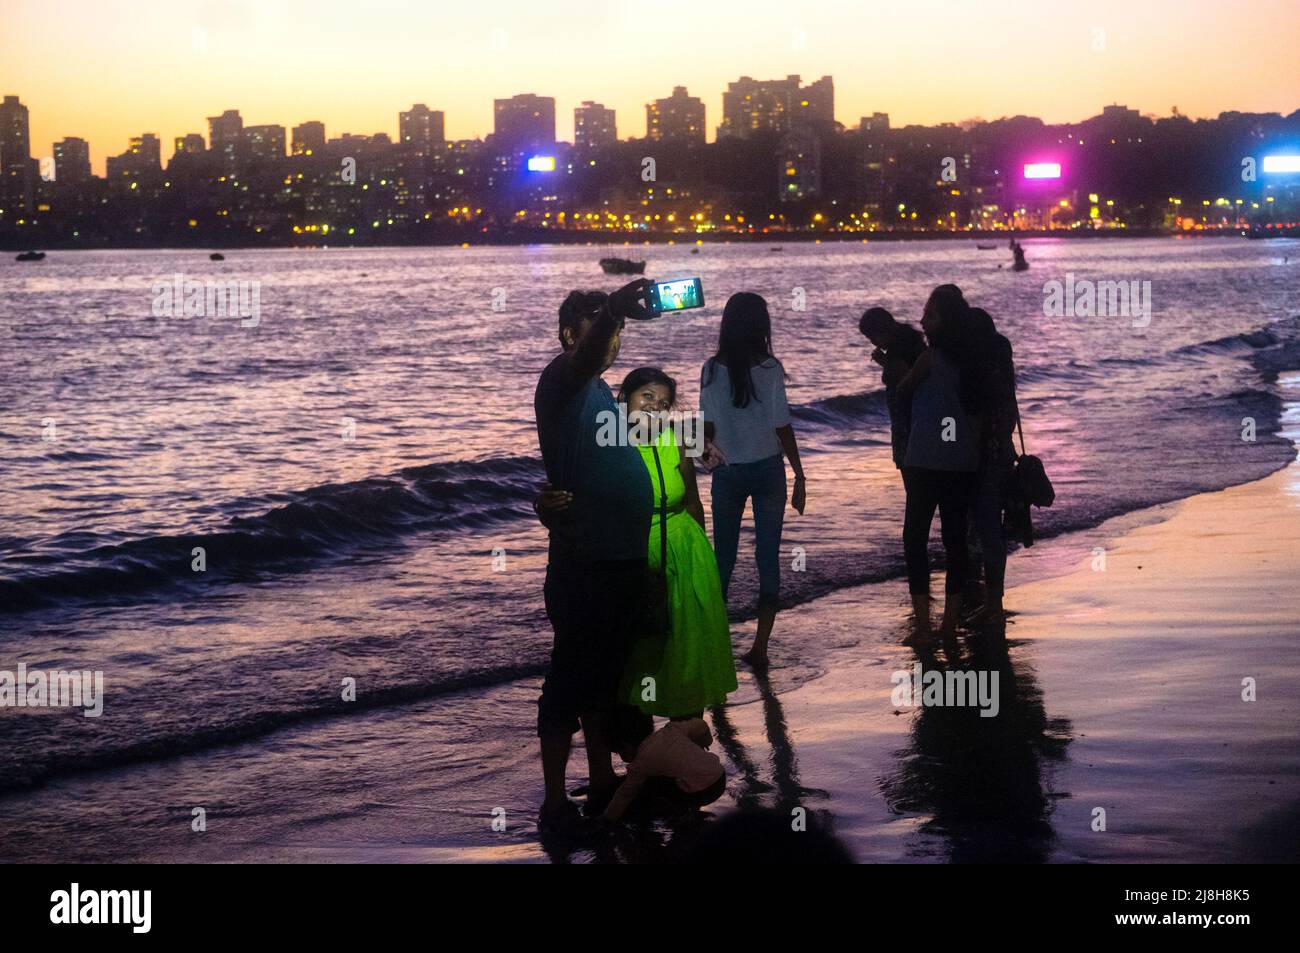 Mumbai, Maharashtra, India : La gente toma selfies al atardecer en la playa Girgaon Chowpatty. El barrio de Malabar Hill en el fondo es el más exclusivo de Mumbai Foto de stock